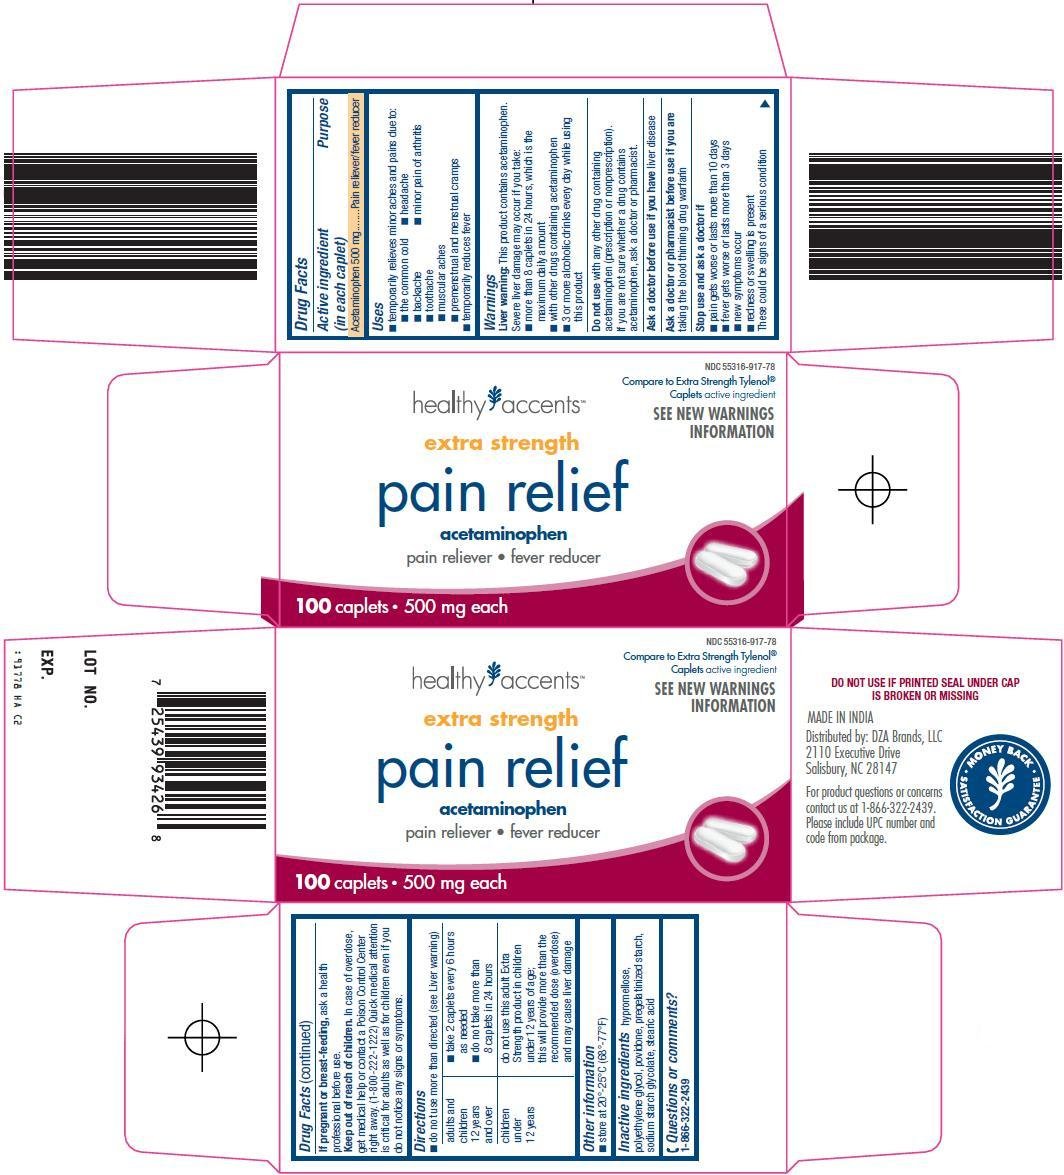 Pain Relief Carton